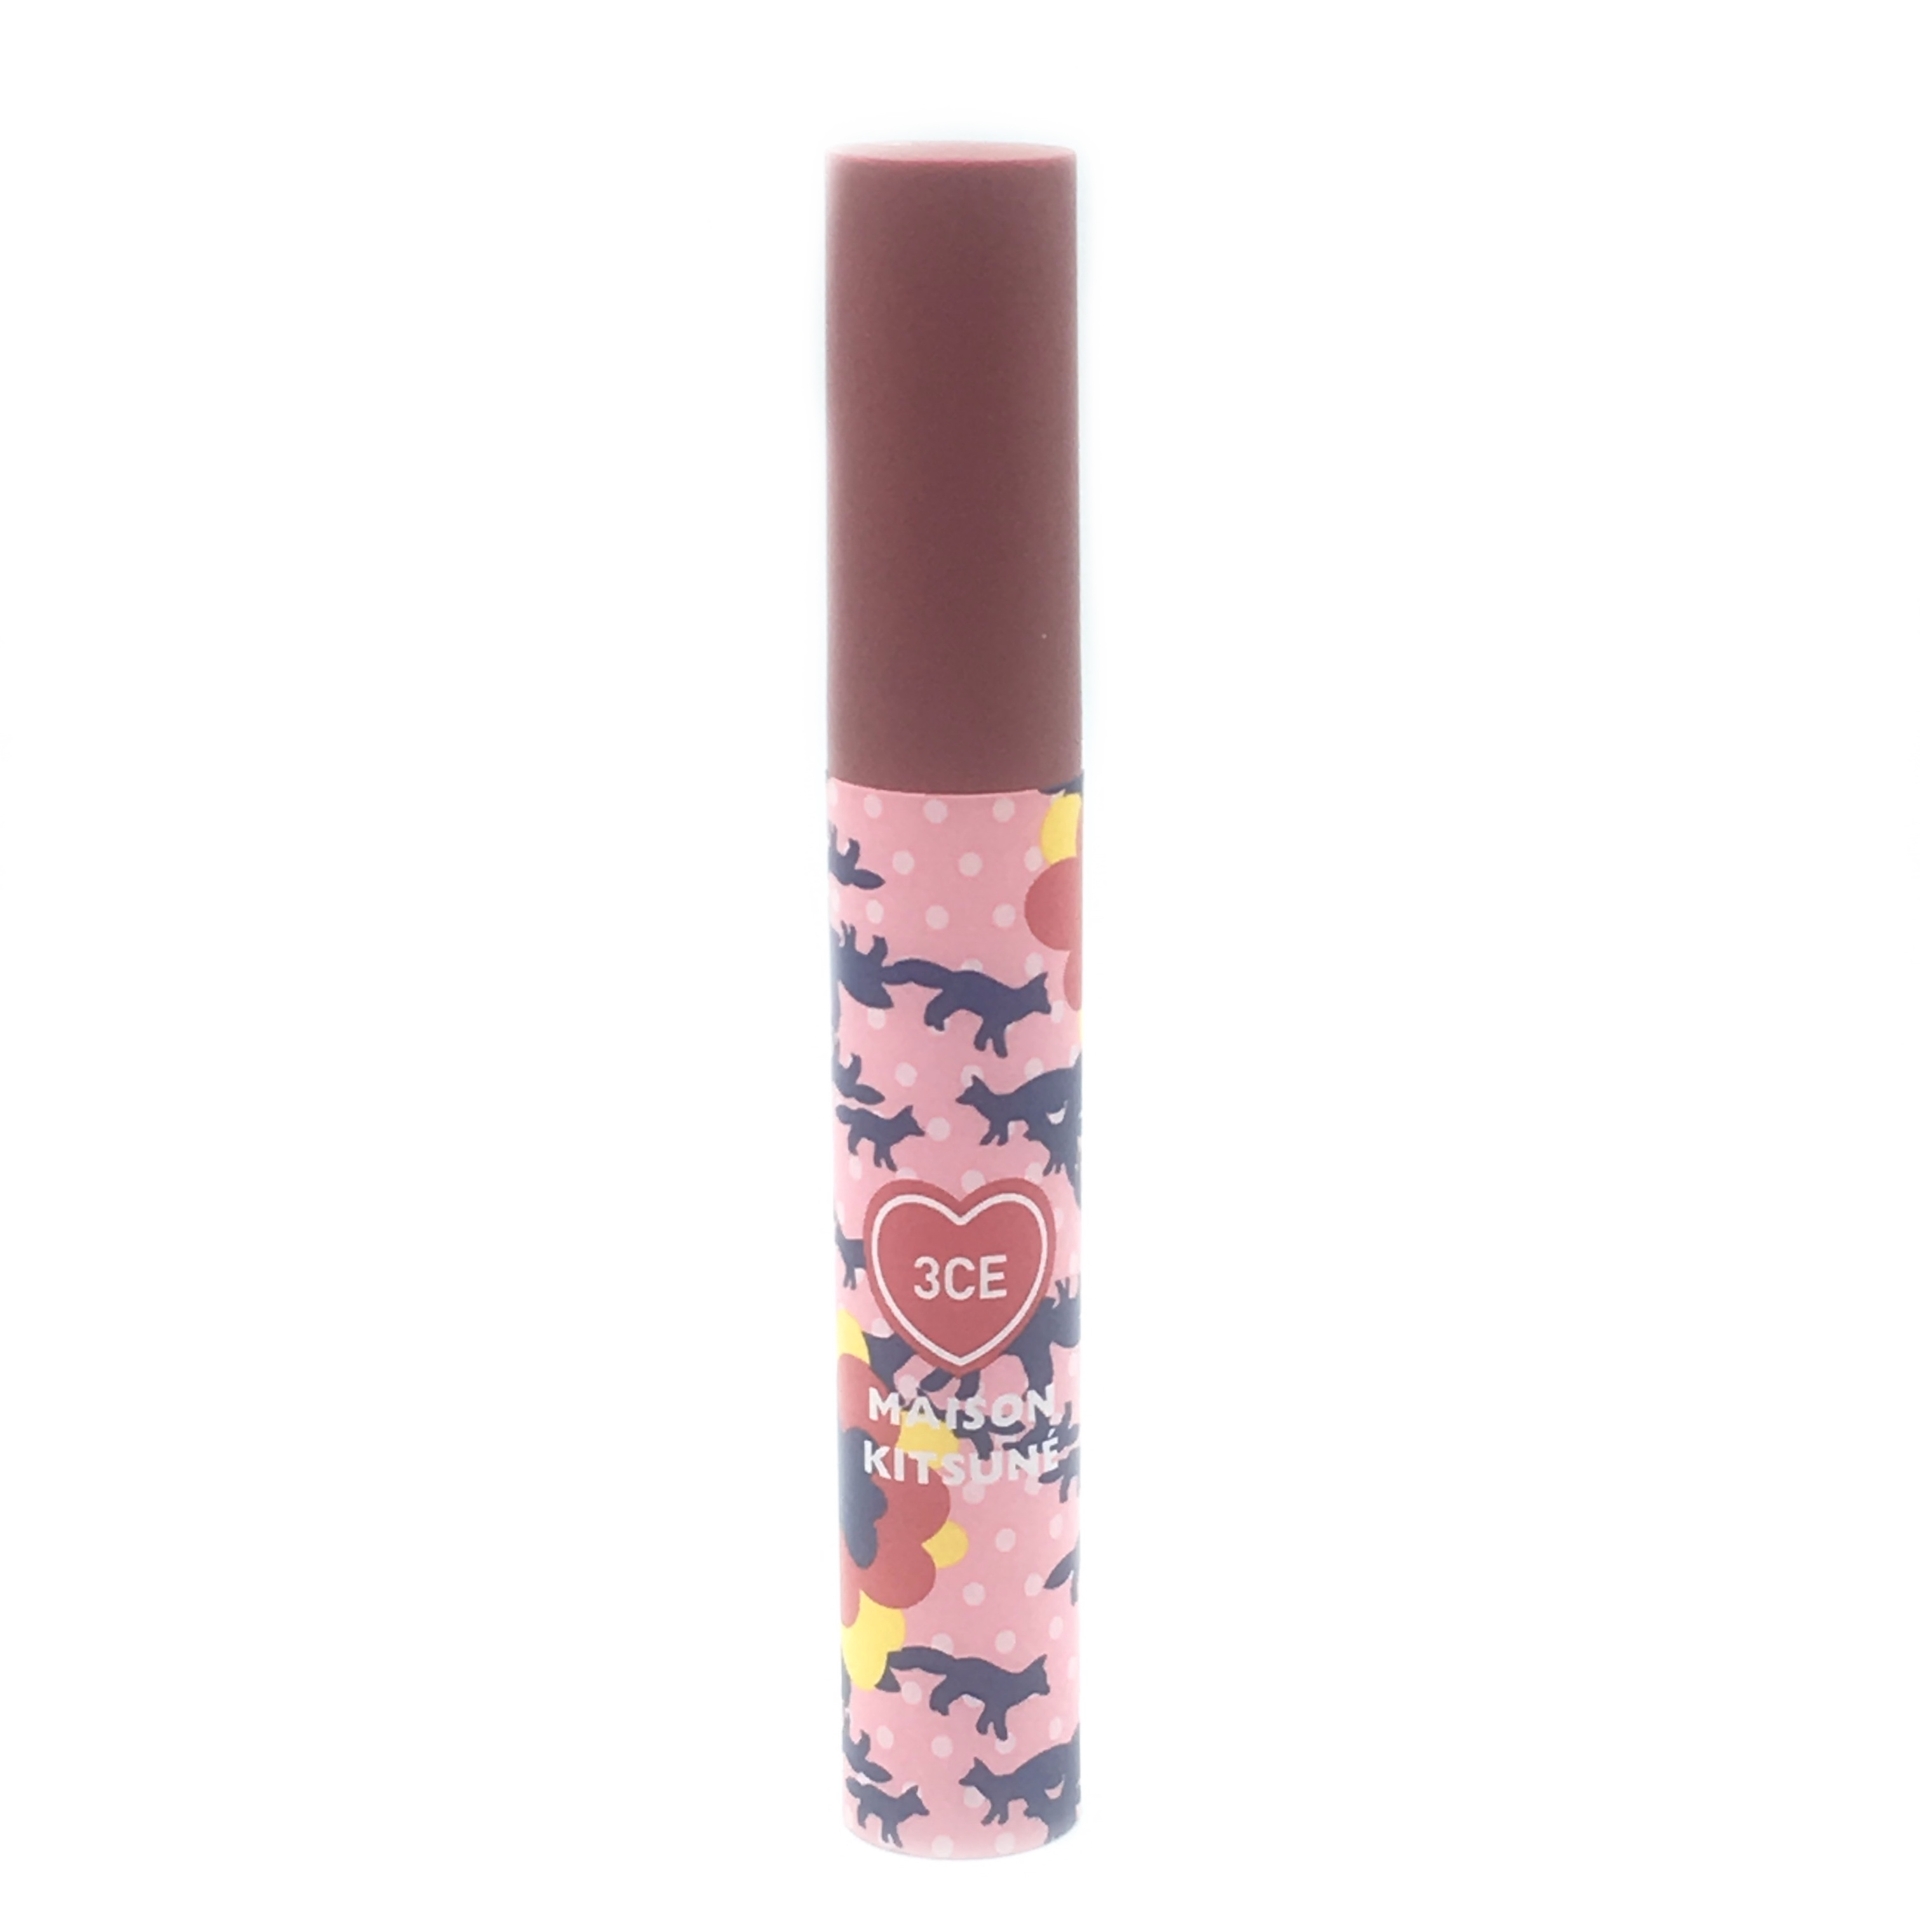 3 Concept Eyes Maison Kitsune Velvet Lip Tint Twin Rose Lips